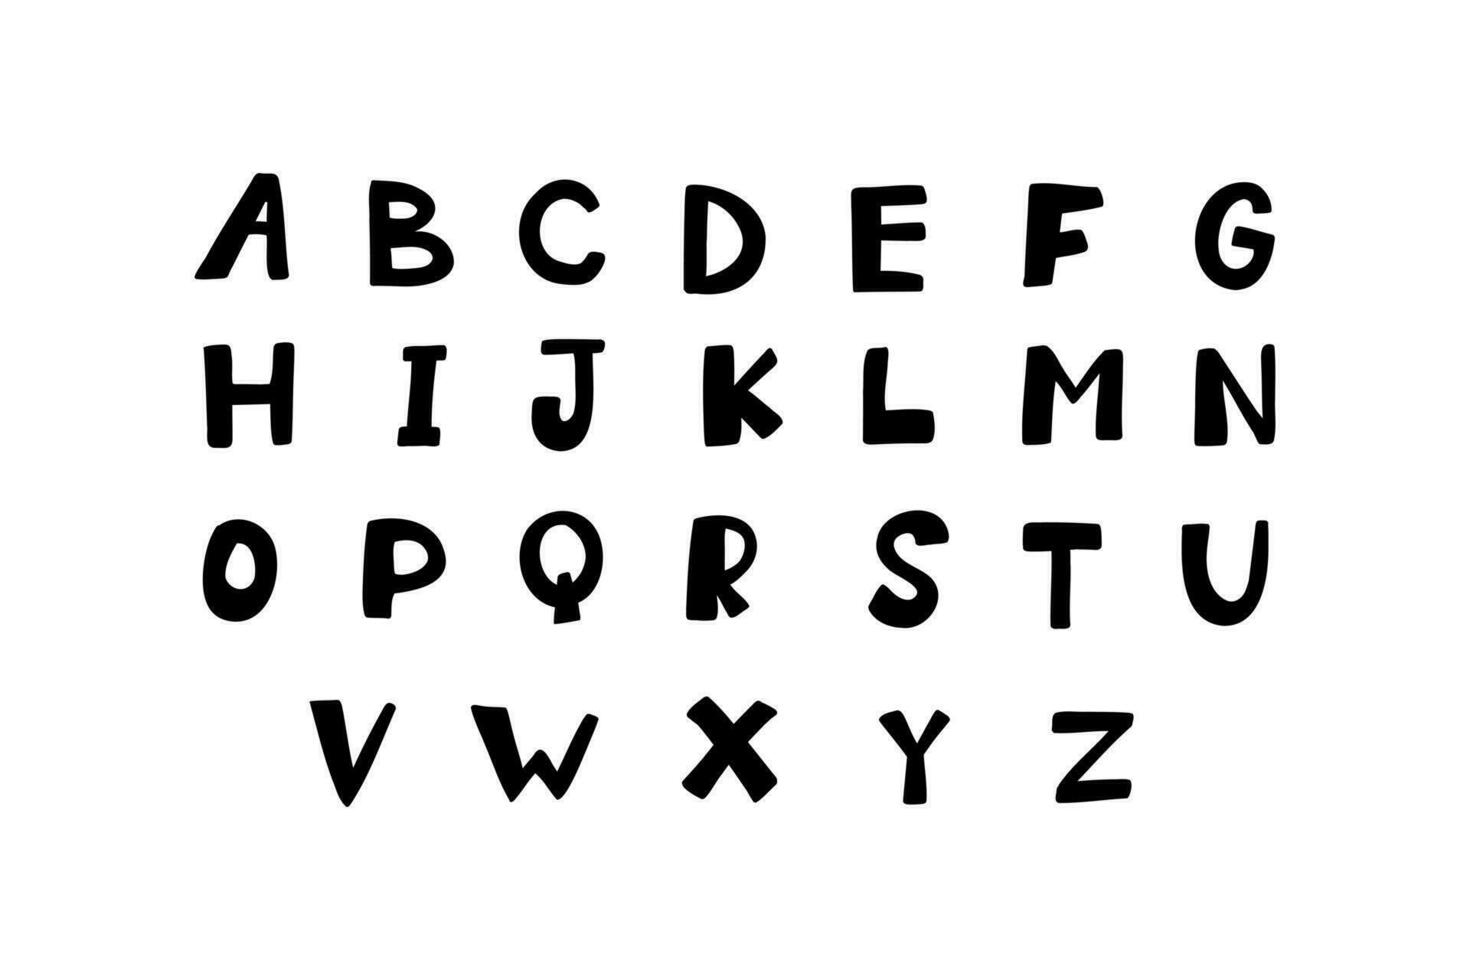 lösa text svart engelsk latin ABC alfabet font en till z. vektor illustration i hand dragen klotter stil isolerat på vit bakgrund. för bröllop inbjudan, kort, logotyp, barn bok, dekorera.